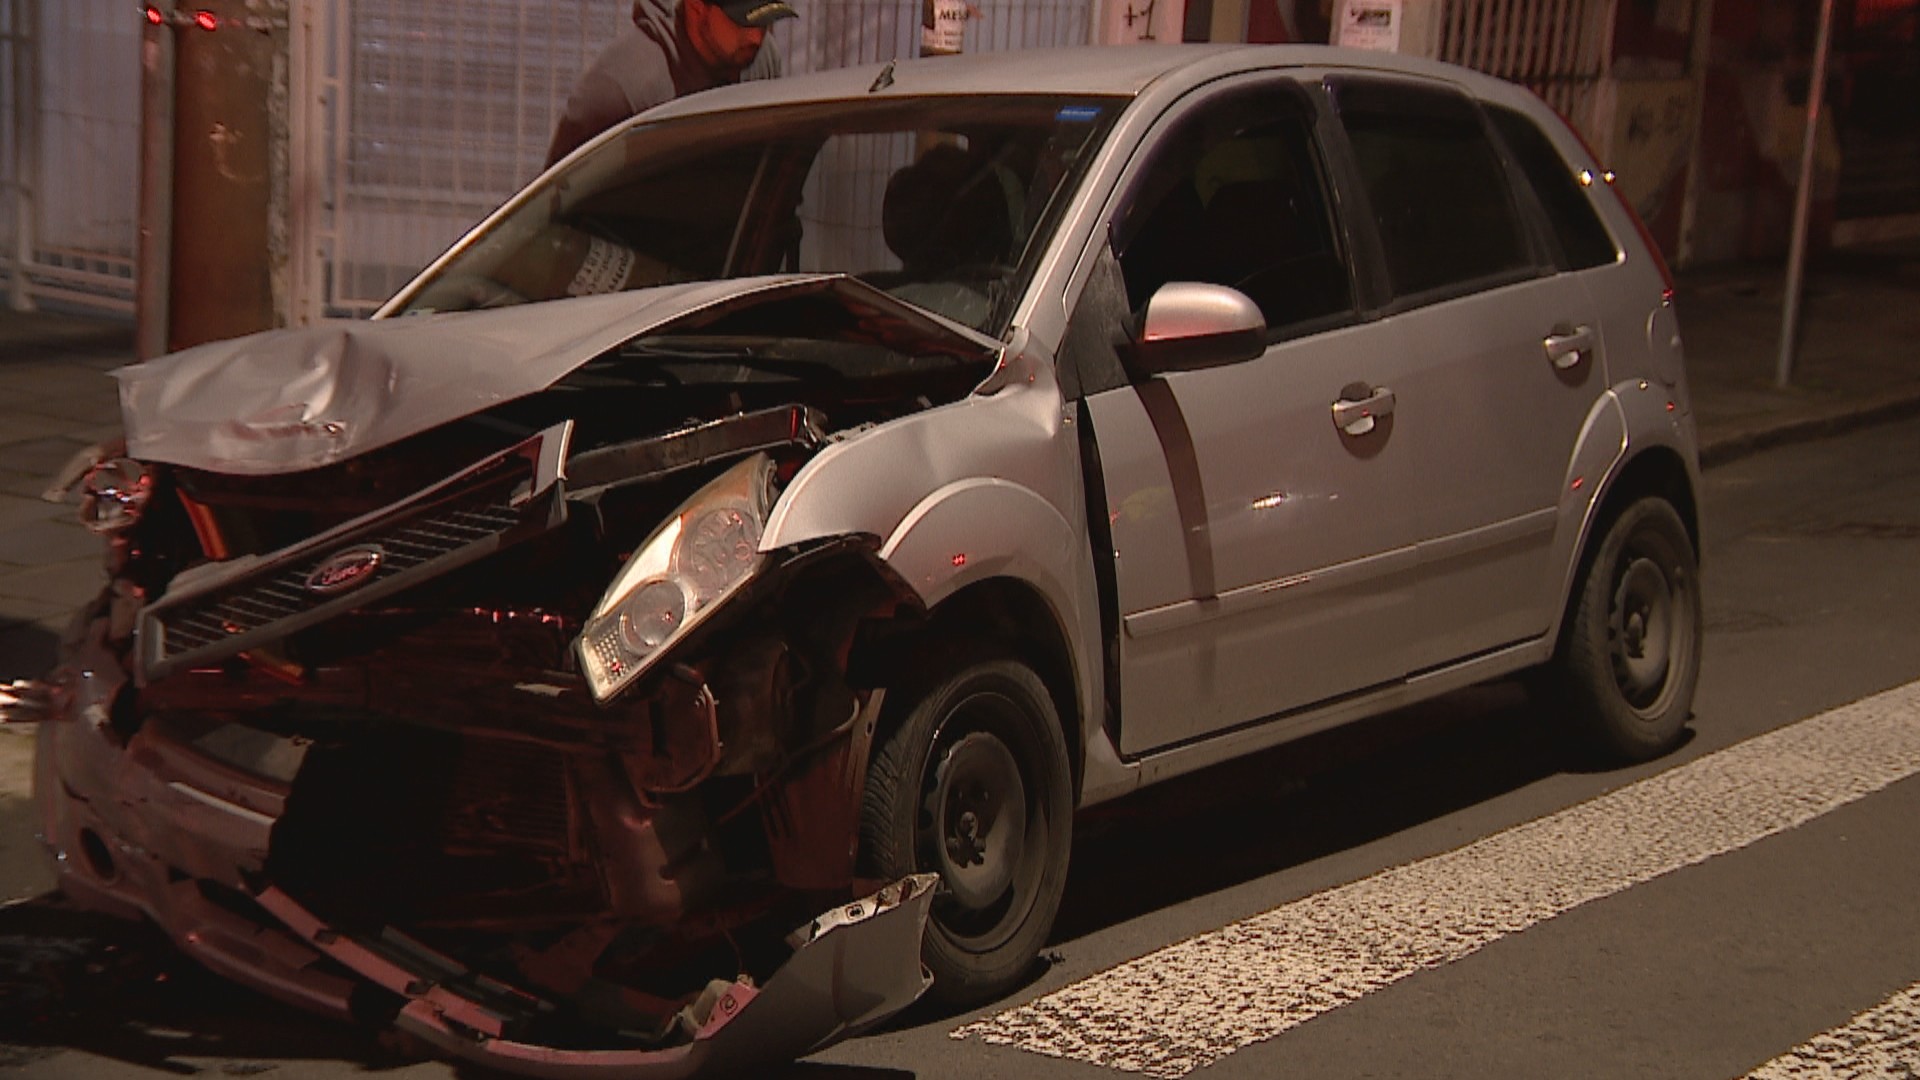 Madrugada de sábado é marcada por pelo menos três acidentes de trânsito em Porto Alegre